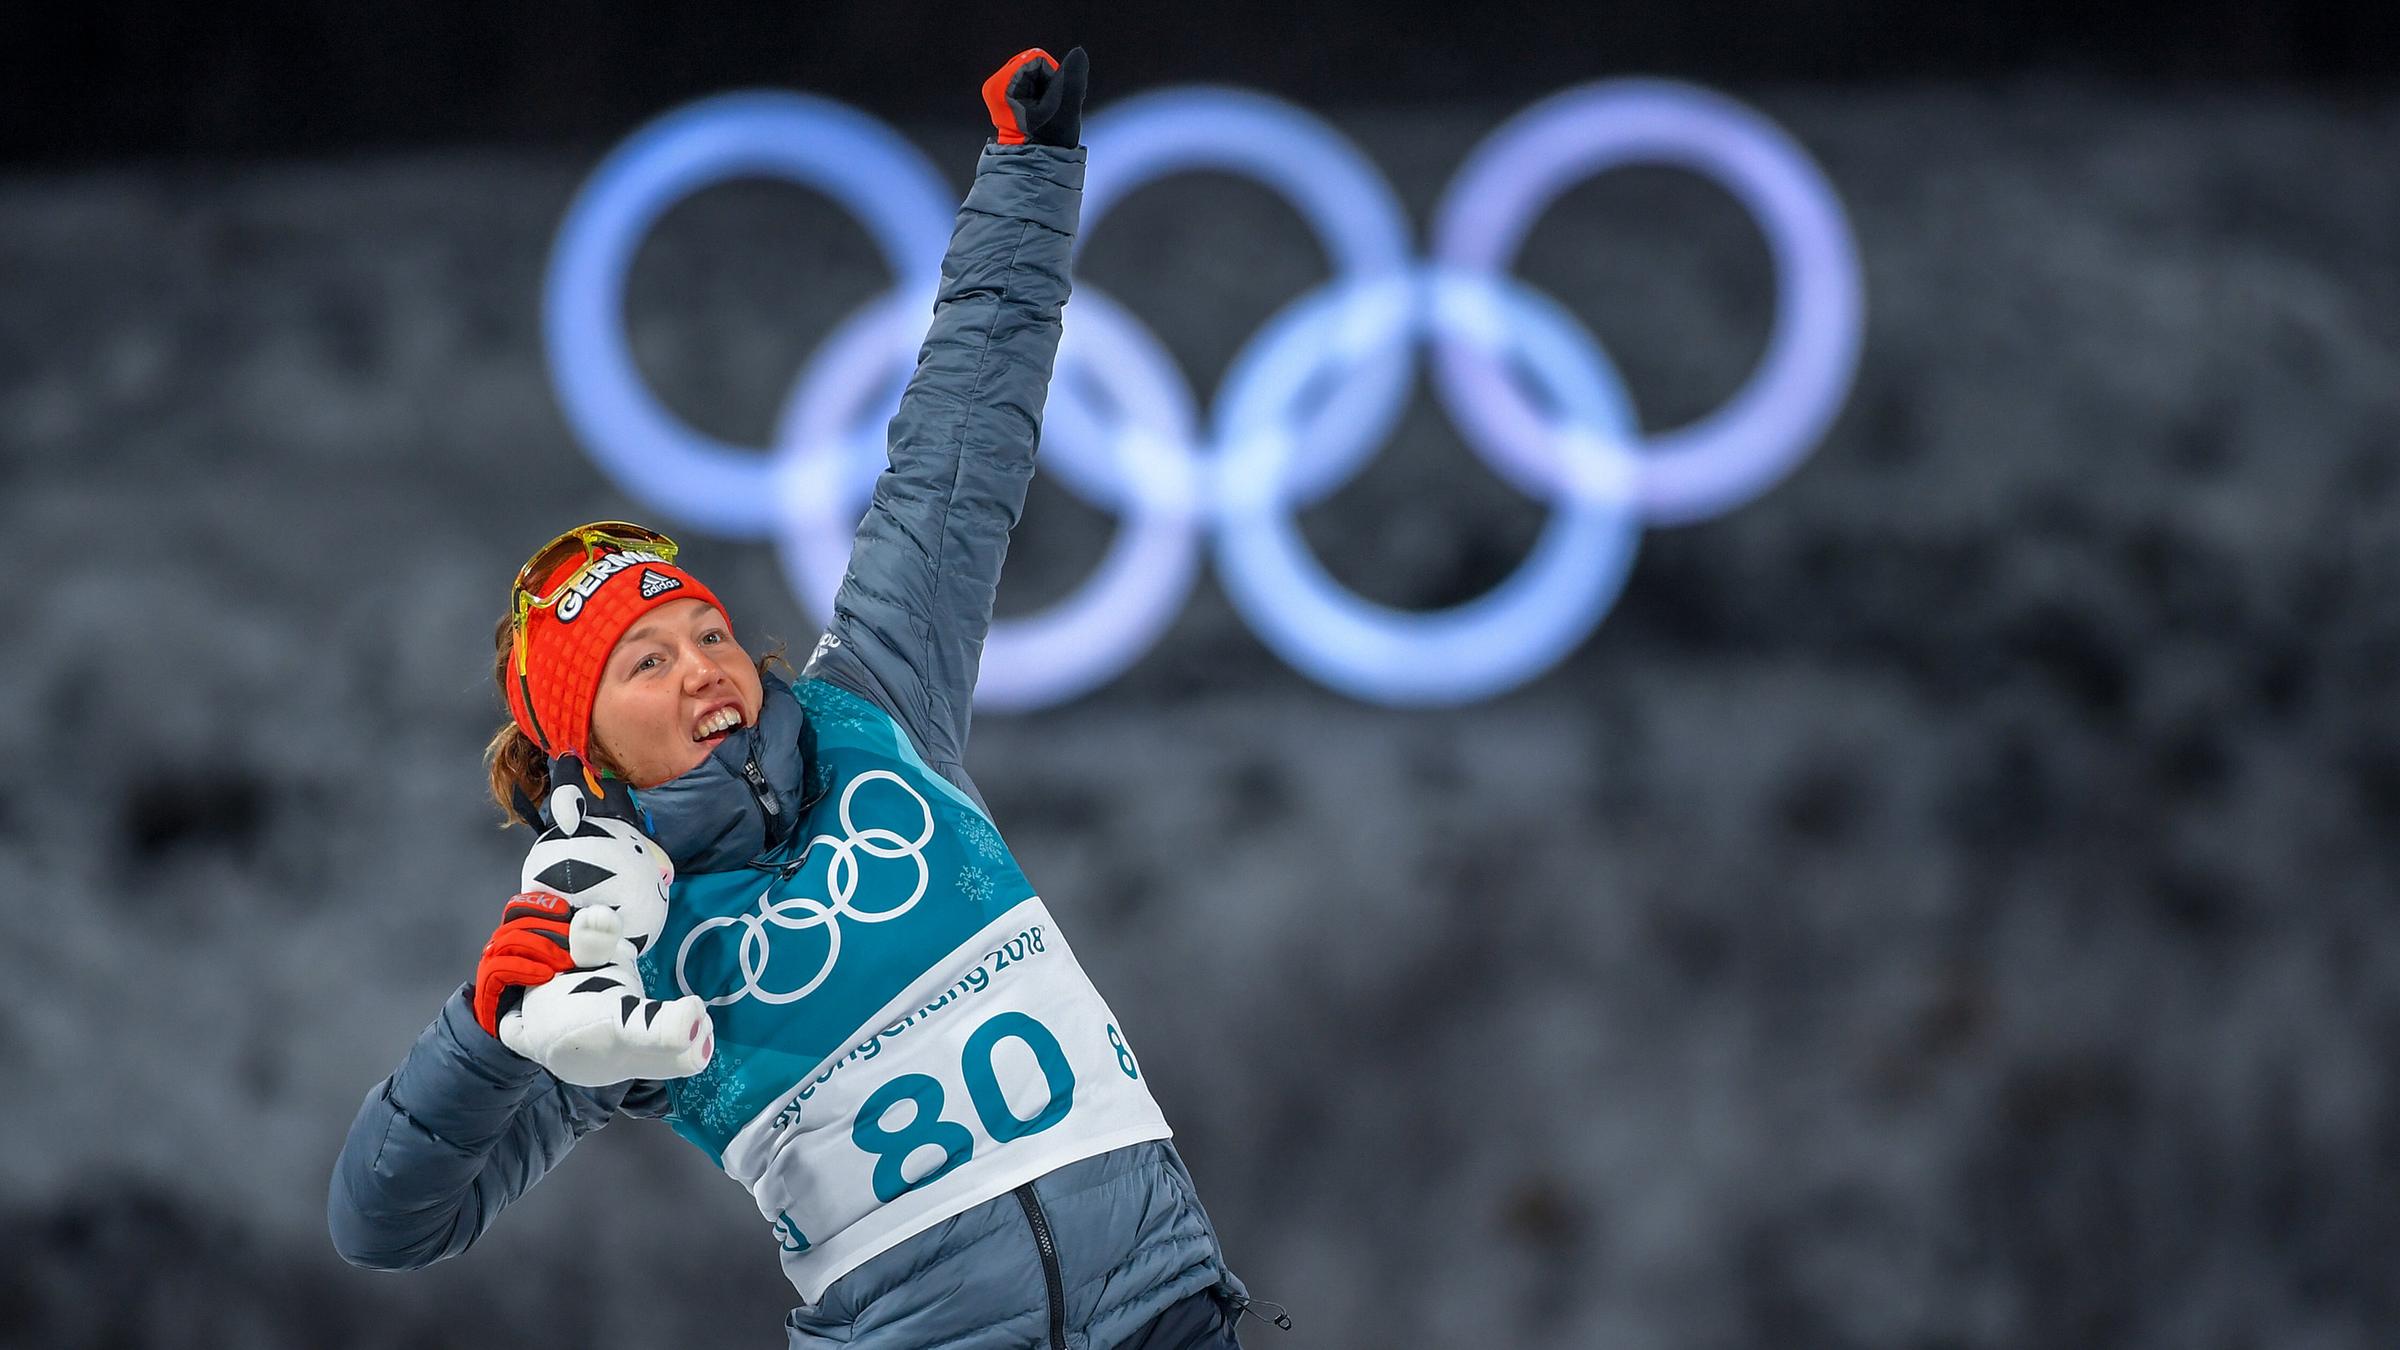 15.02.2018, Pyeongchang, Olympia, Biathlon: Laura Dahlmeier jubelt über ihre Bronzemedaille im Einzelrennen.